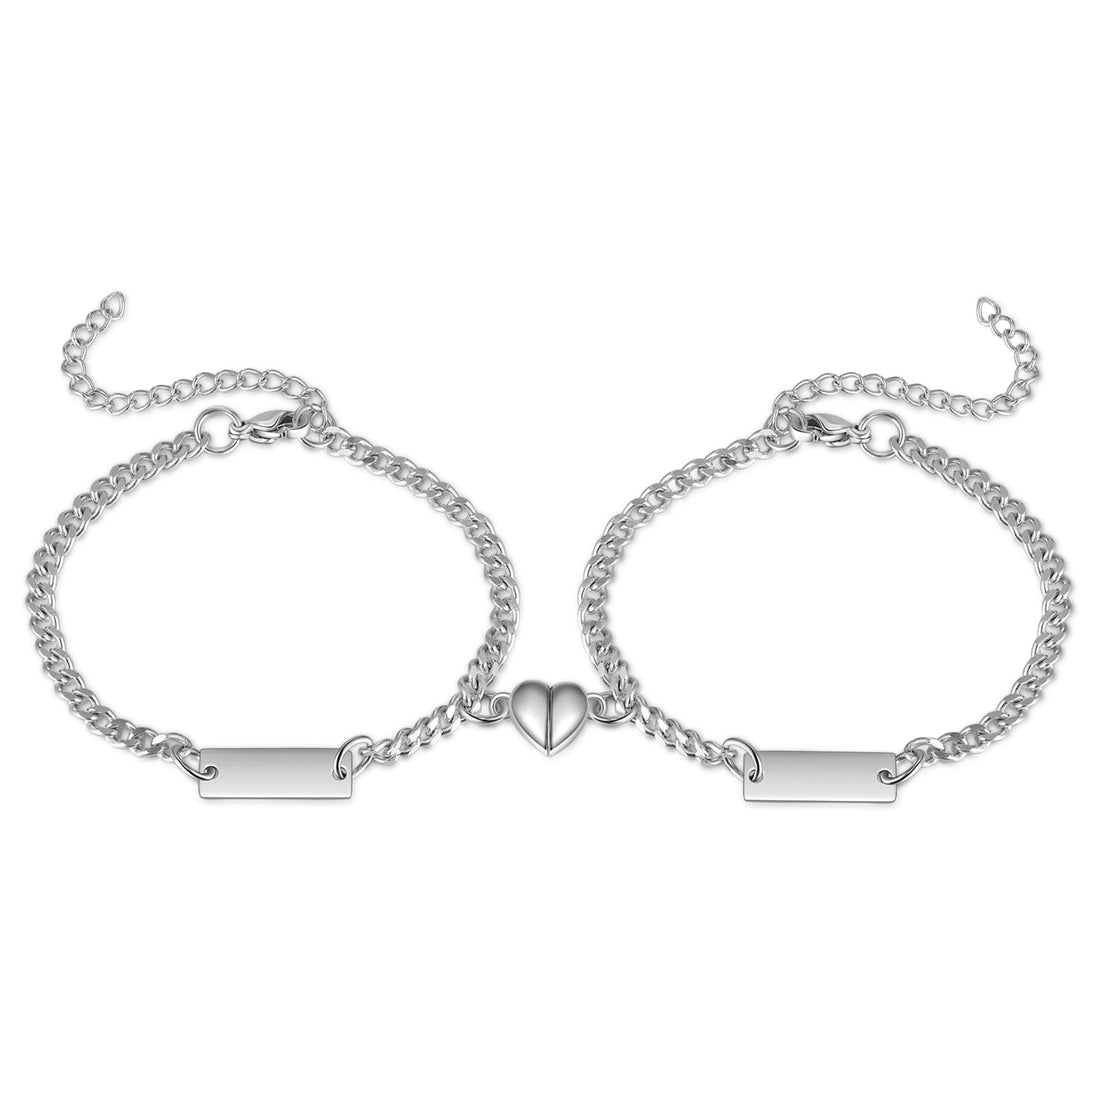 Custom Stainless Steel Couple Bracelet